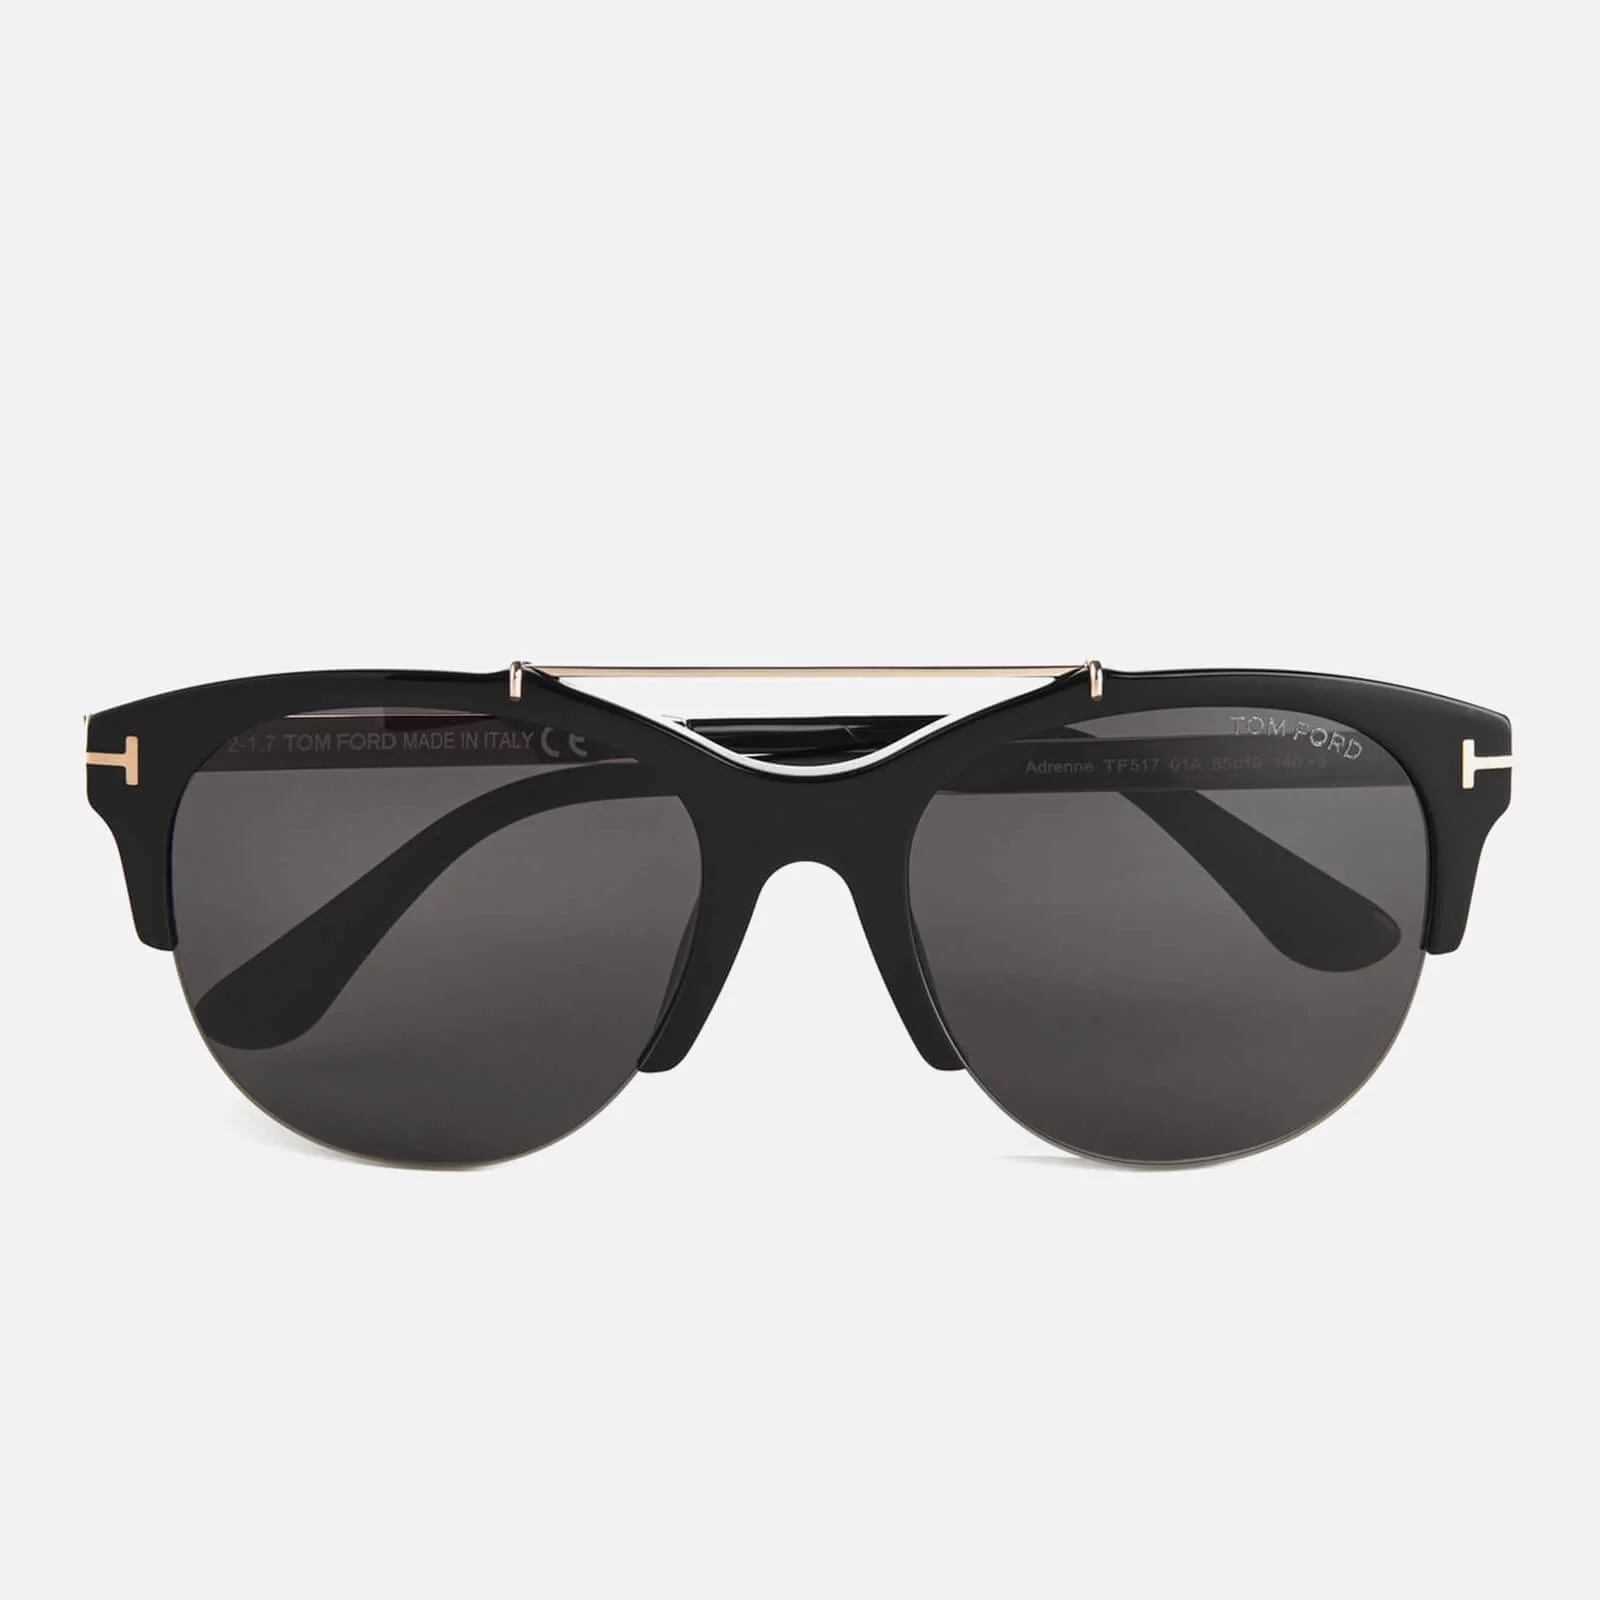 Tom Ford Women's Adrenne Sunglasses - Black Image 1